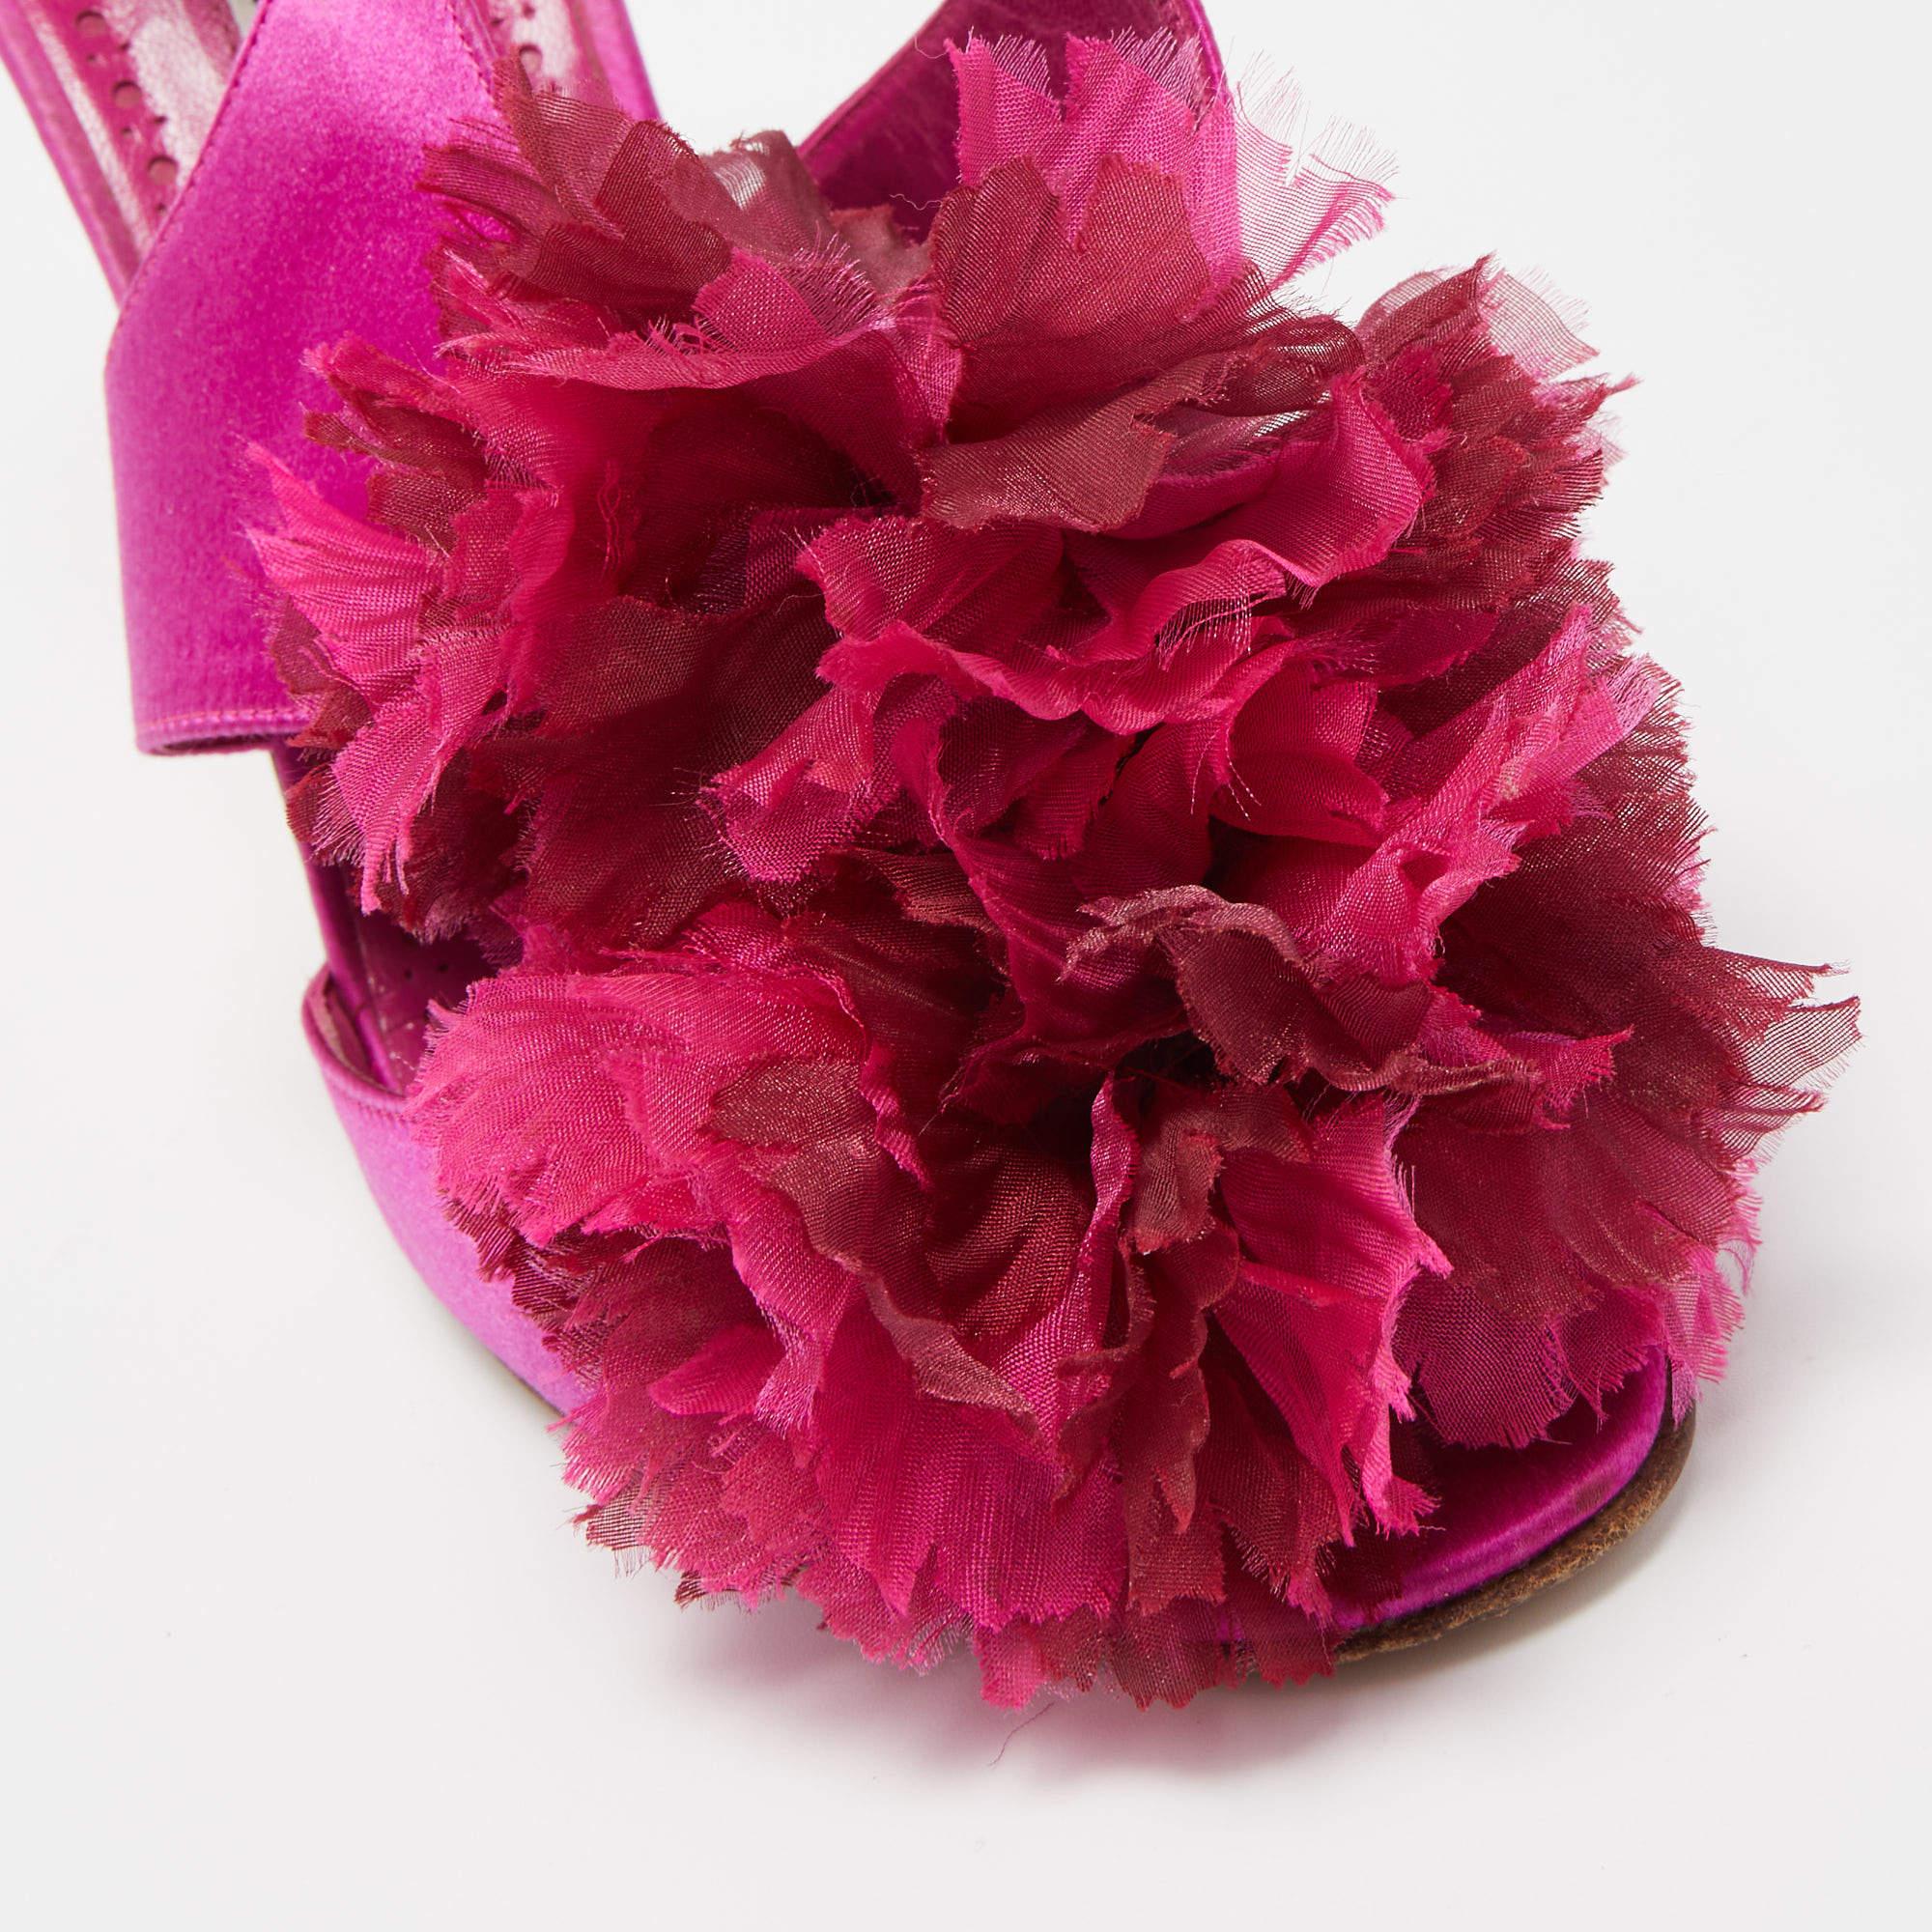 Manolo Blahnik Pink Satin Flower Embellished Ankle Strap Sandals Size 38 3